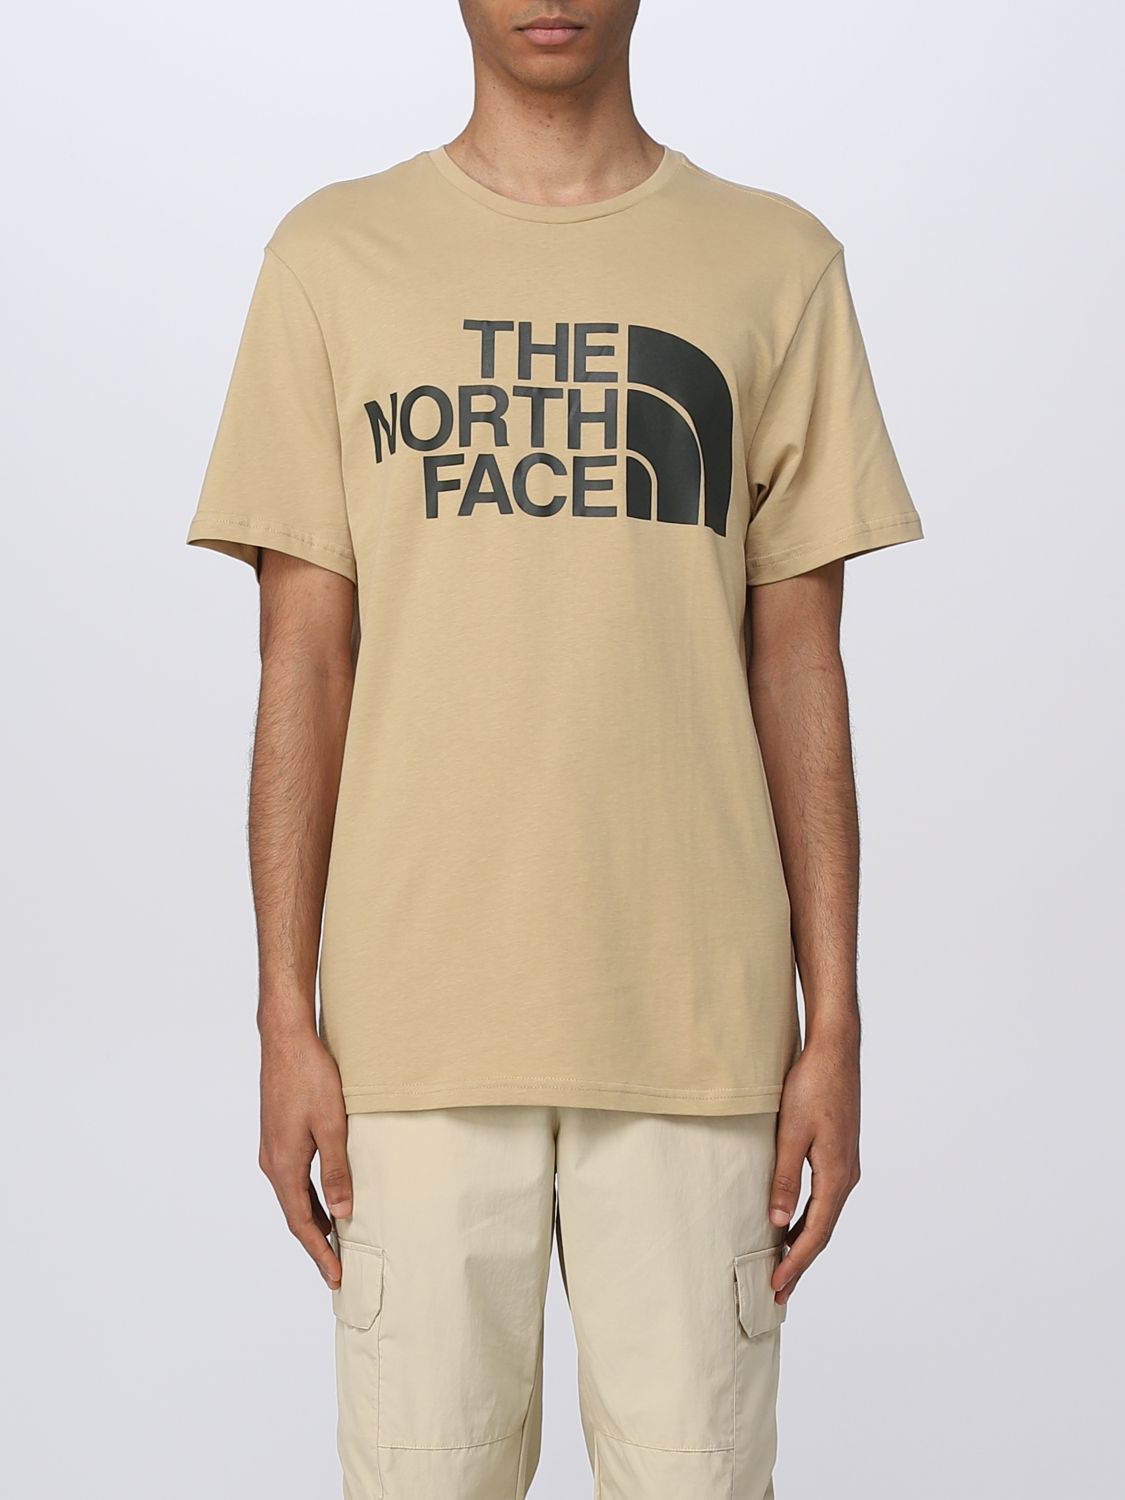 natuurkundige Helderheid Leven van THE NORTH FACE: t-shirt for man - Beige | The North Face t-shirt NF0A4M7X  online on GIGLIO.COM